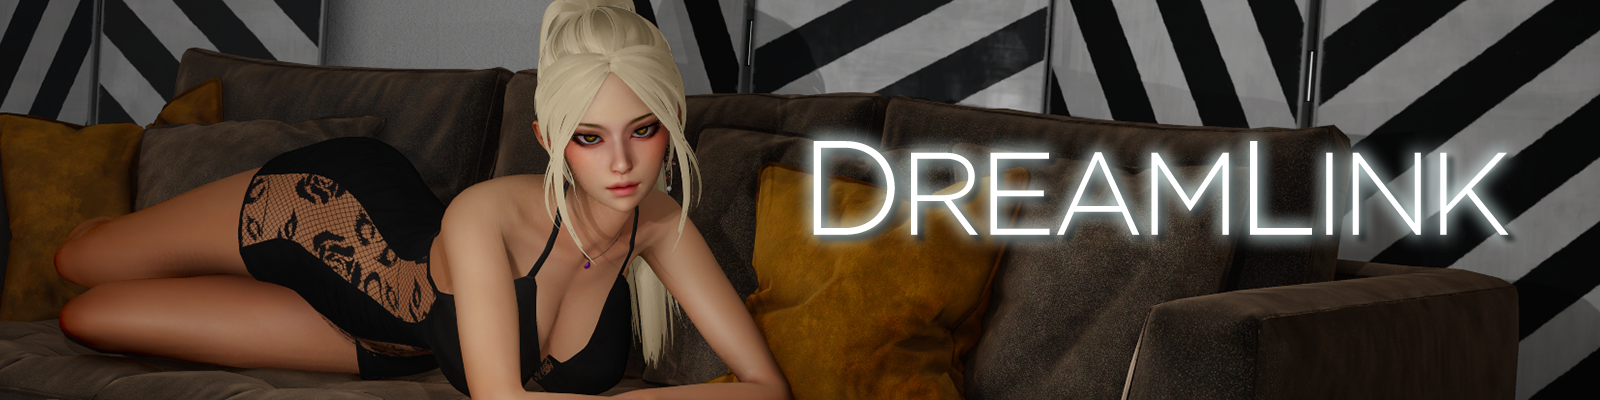 DreamLink poster